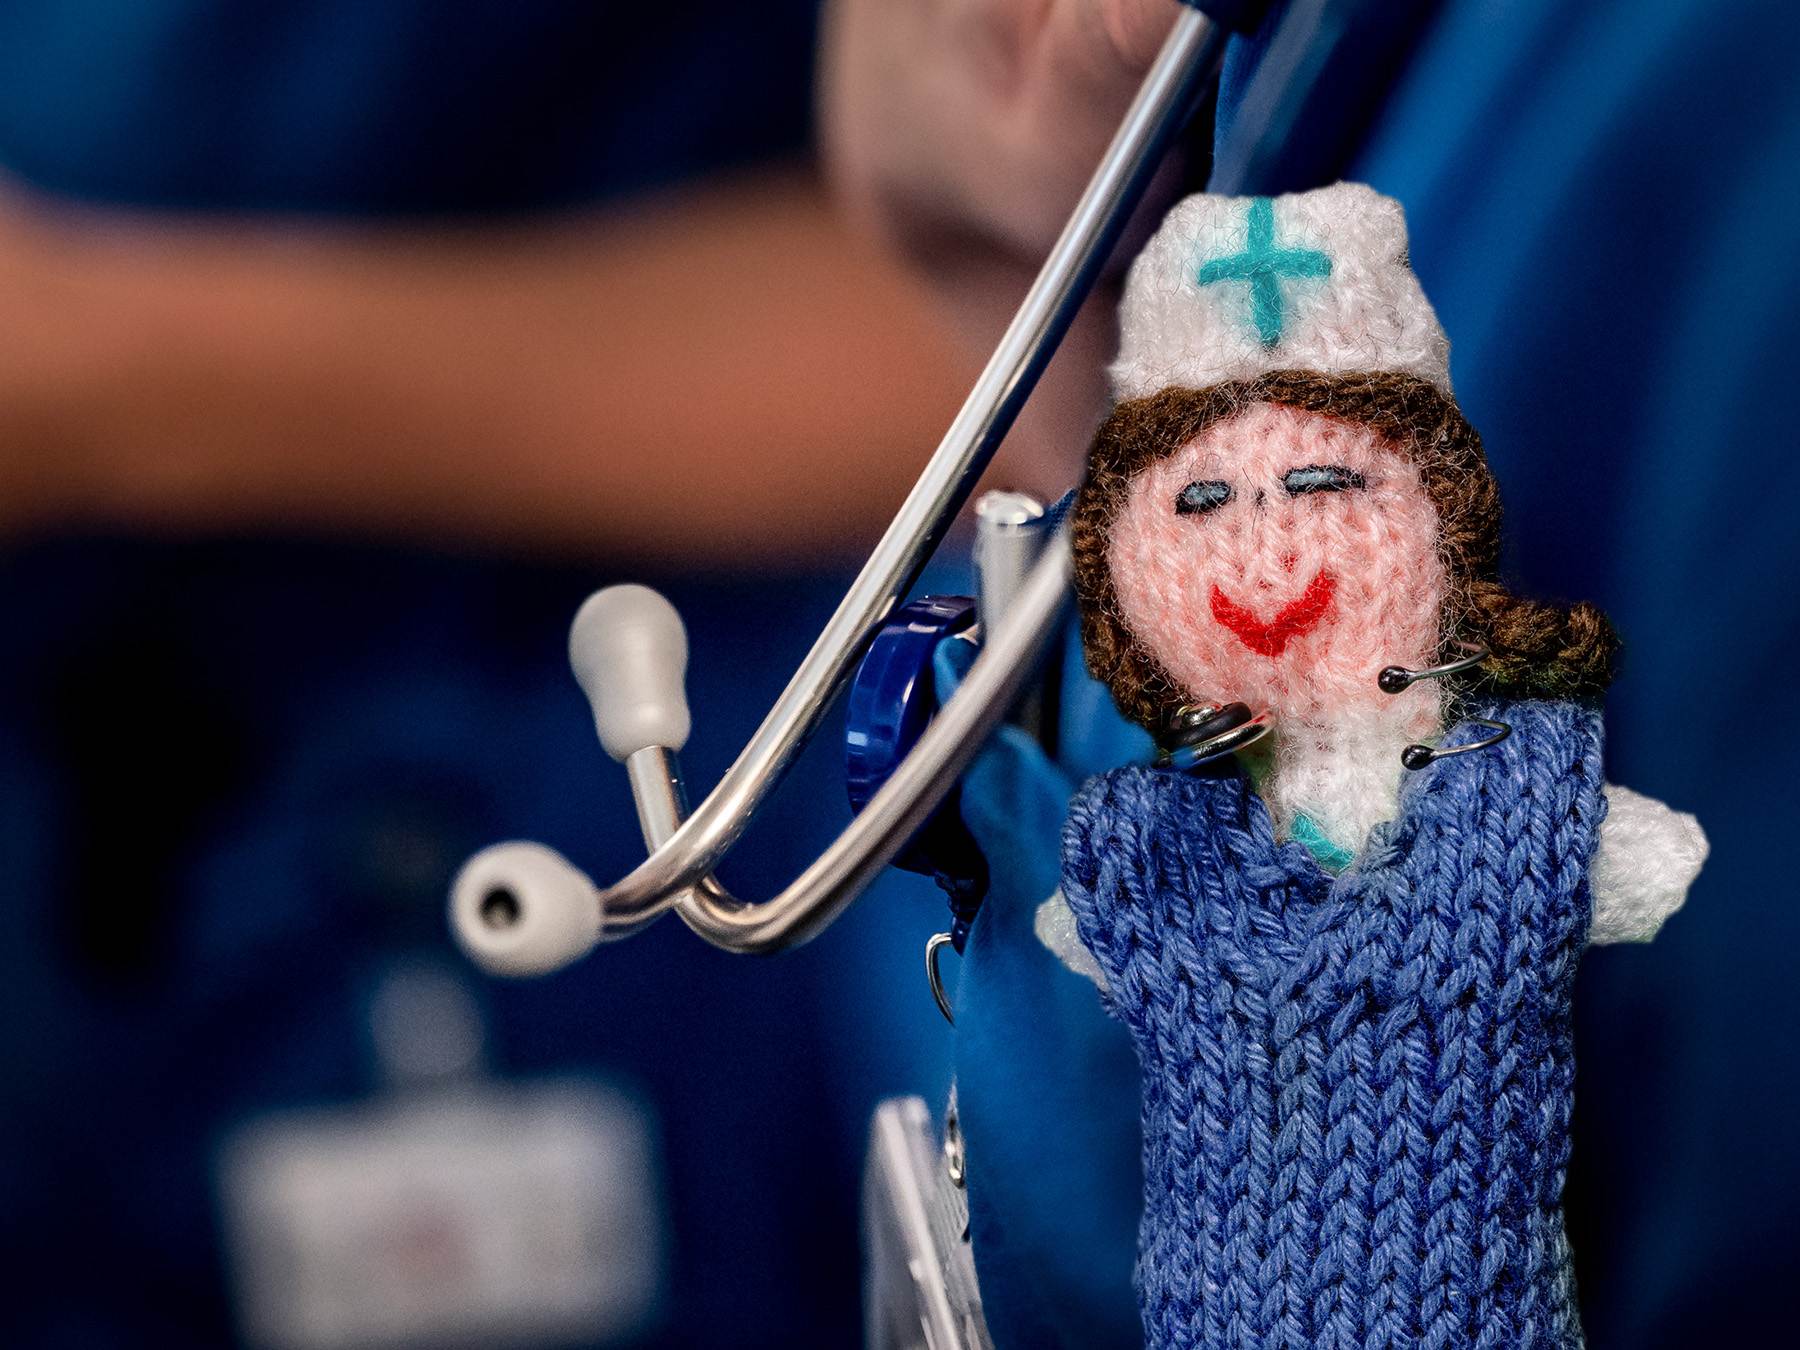 Strickpüppchen einer Gesundheits- und (Kinder-)Krankenpflegerin mit blauem Kittel und einem echten Stethoskop. Der Hintergrund ist bewusst unscharf gehalten und zeigt echte Gesundheits- und (Kinder-)Krankenpfleger.